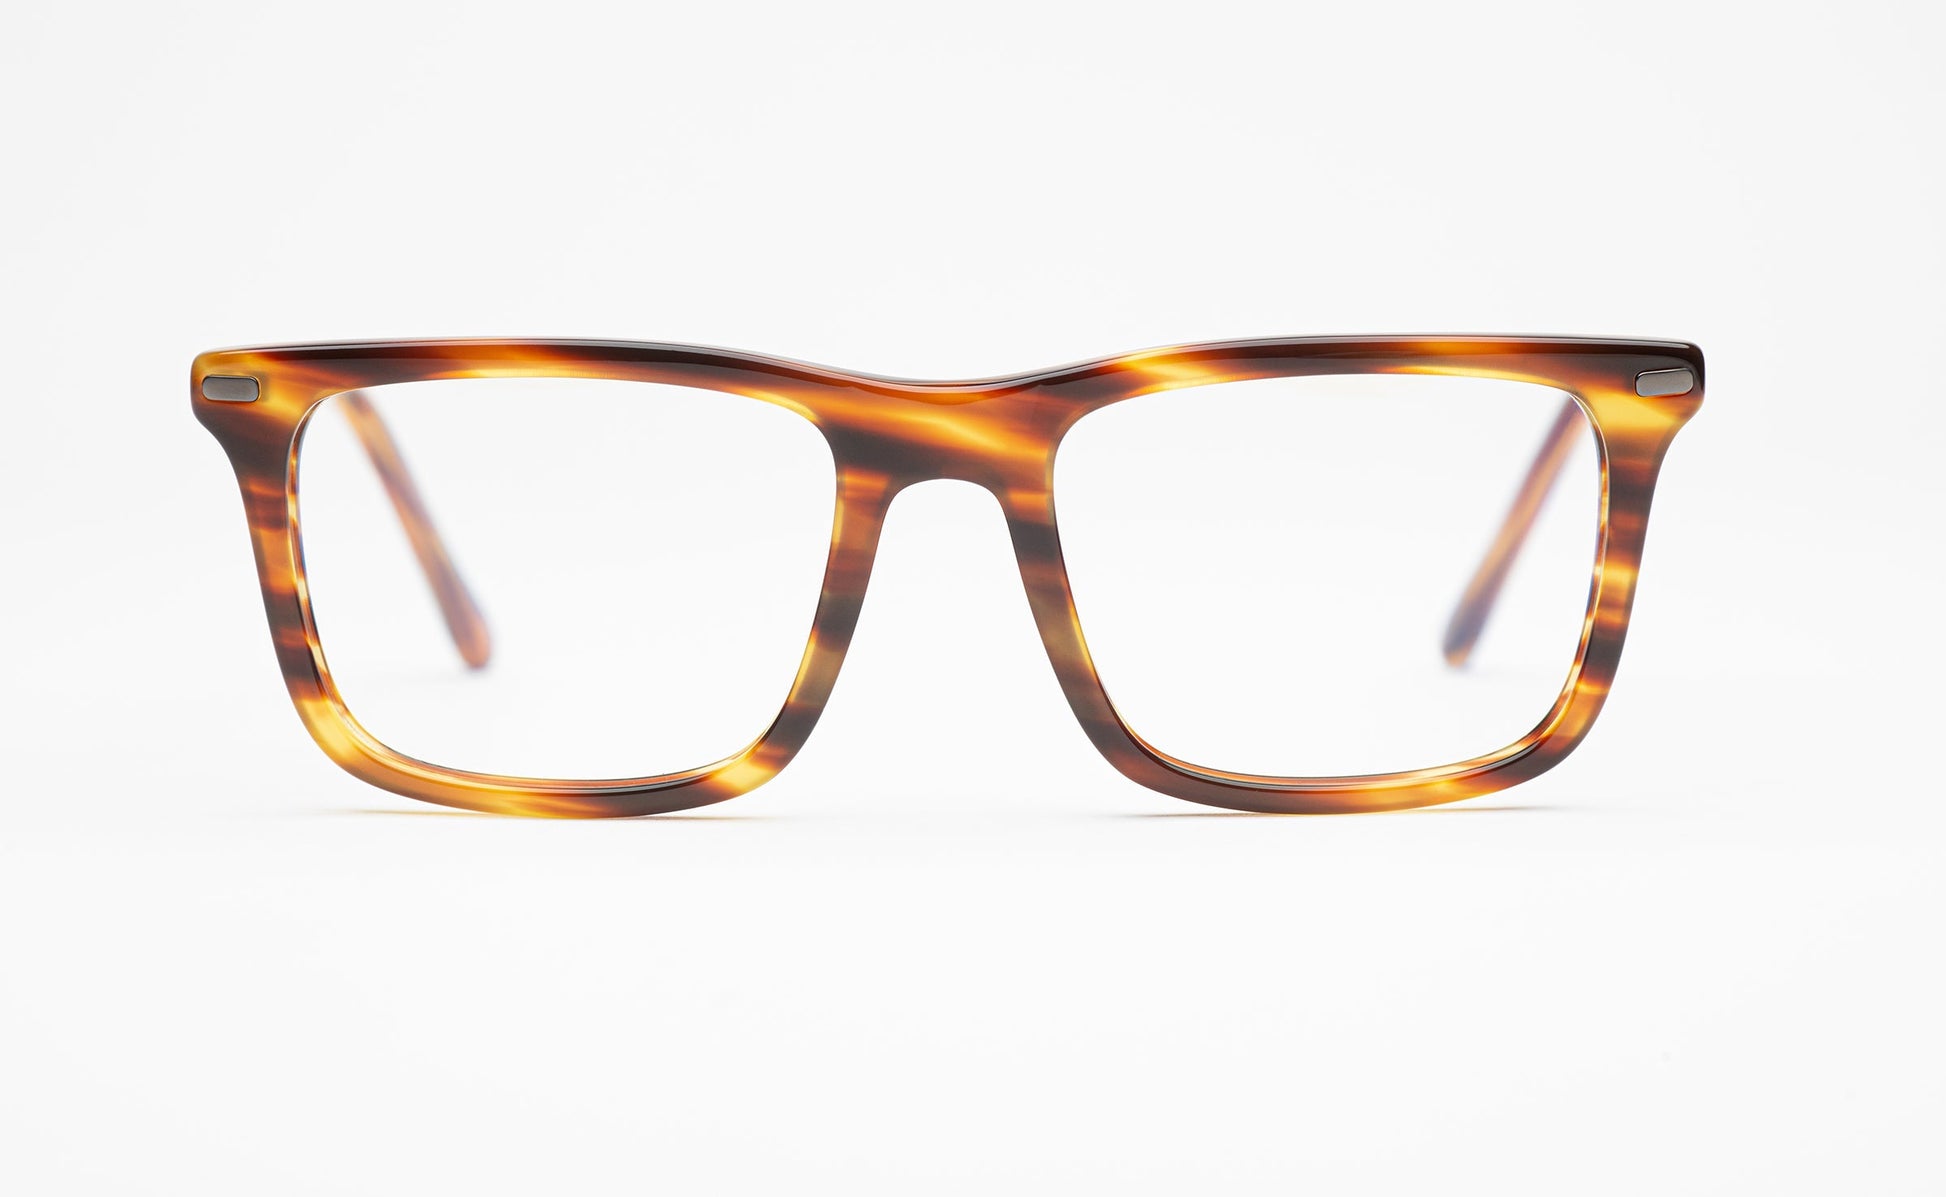 The Director 3 | Tortoiseshell Frame Glasses - Designer Prescription Glasses with Oversized Rectangular Frames 